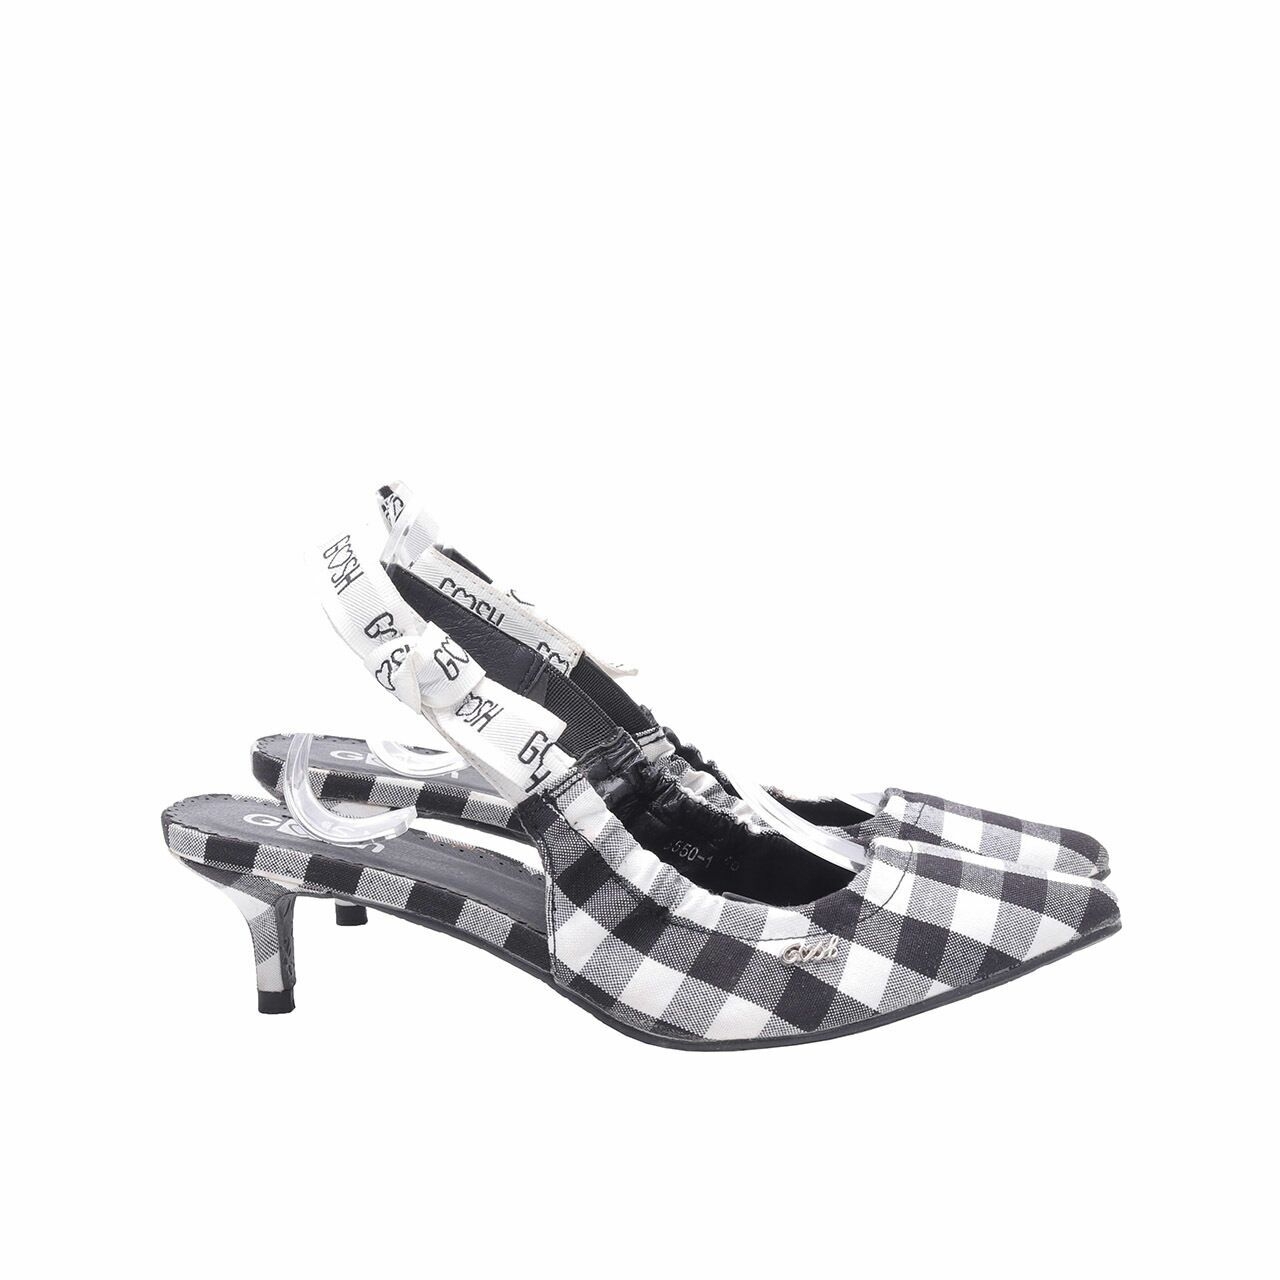 Gosh Black & White Checkered Backstrap Heels